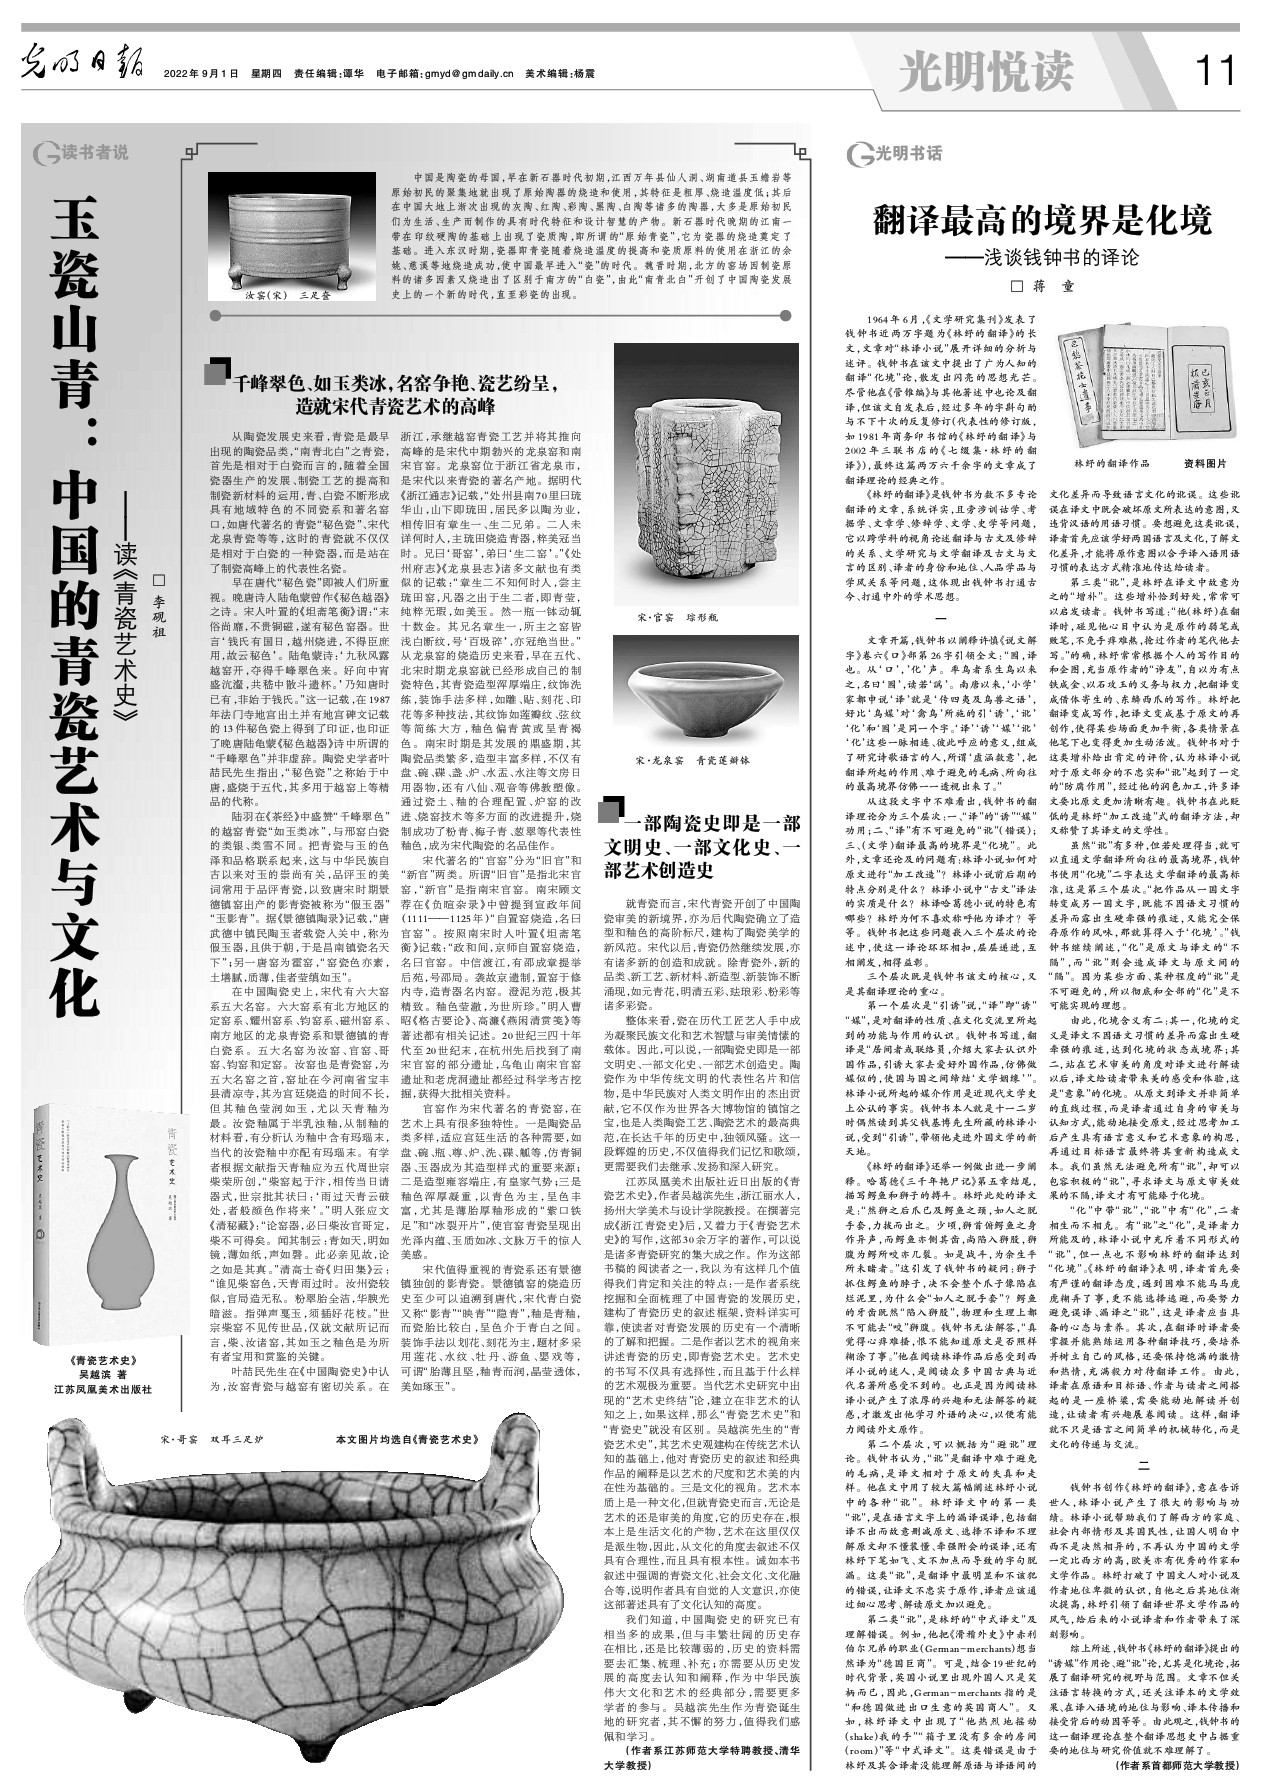 玉瓷山青：中国的青瓷艺术与文化 光明日报 光明网